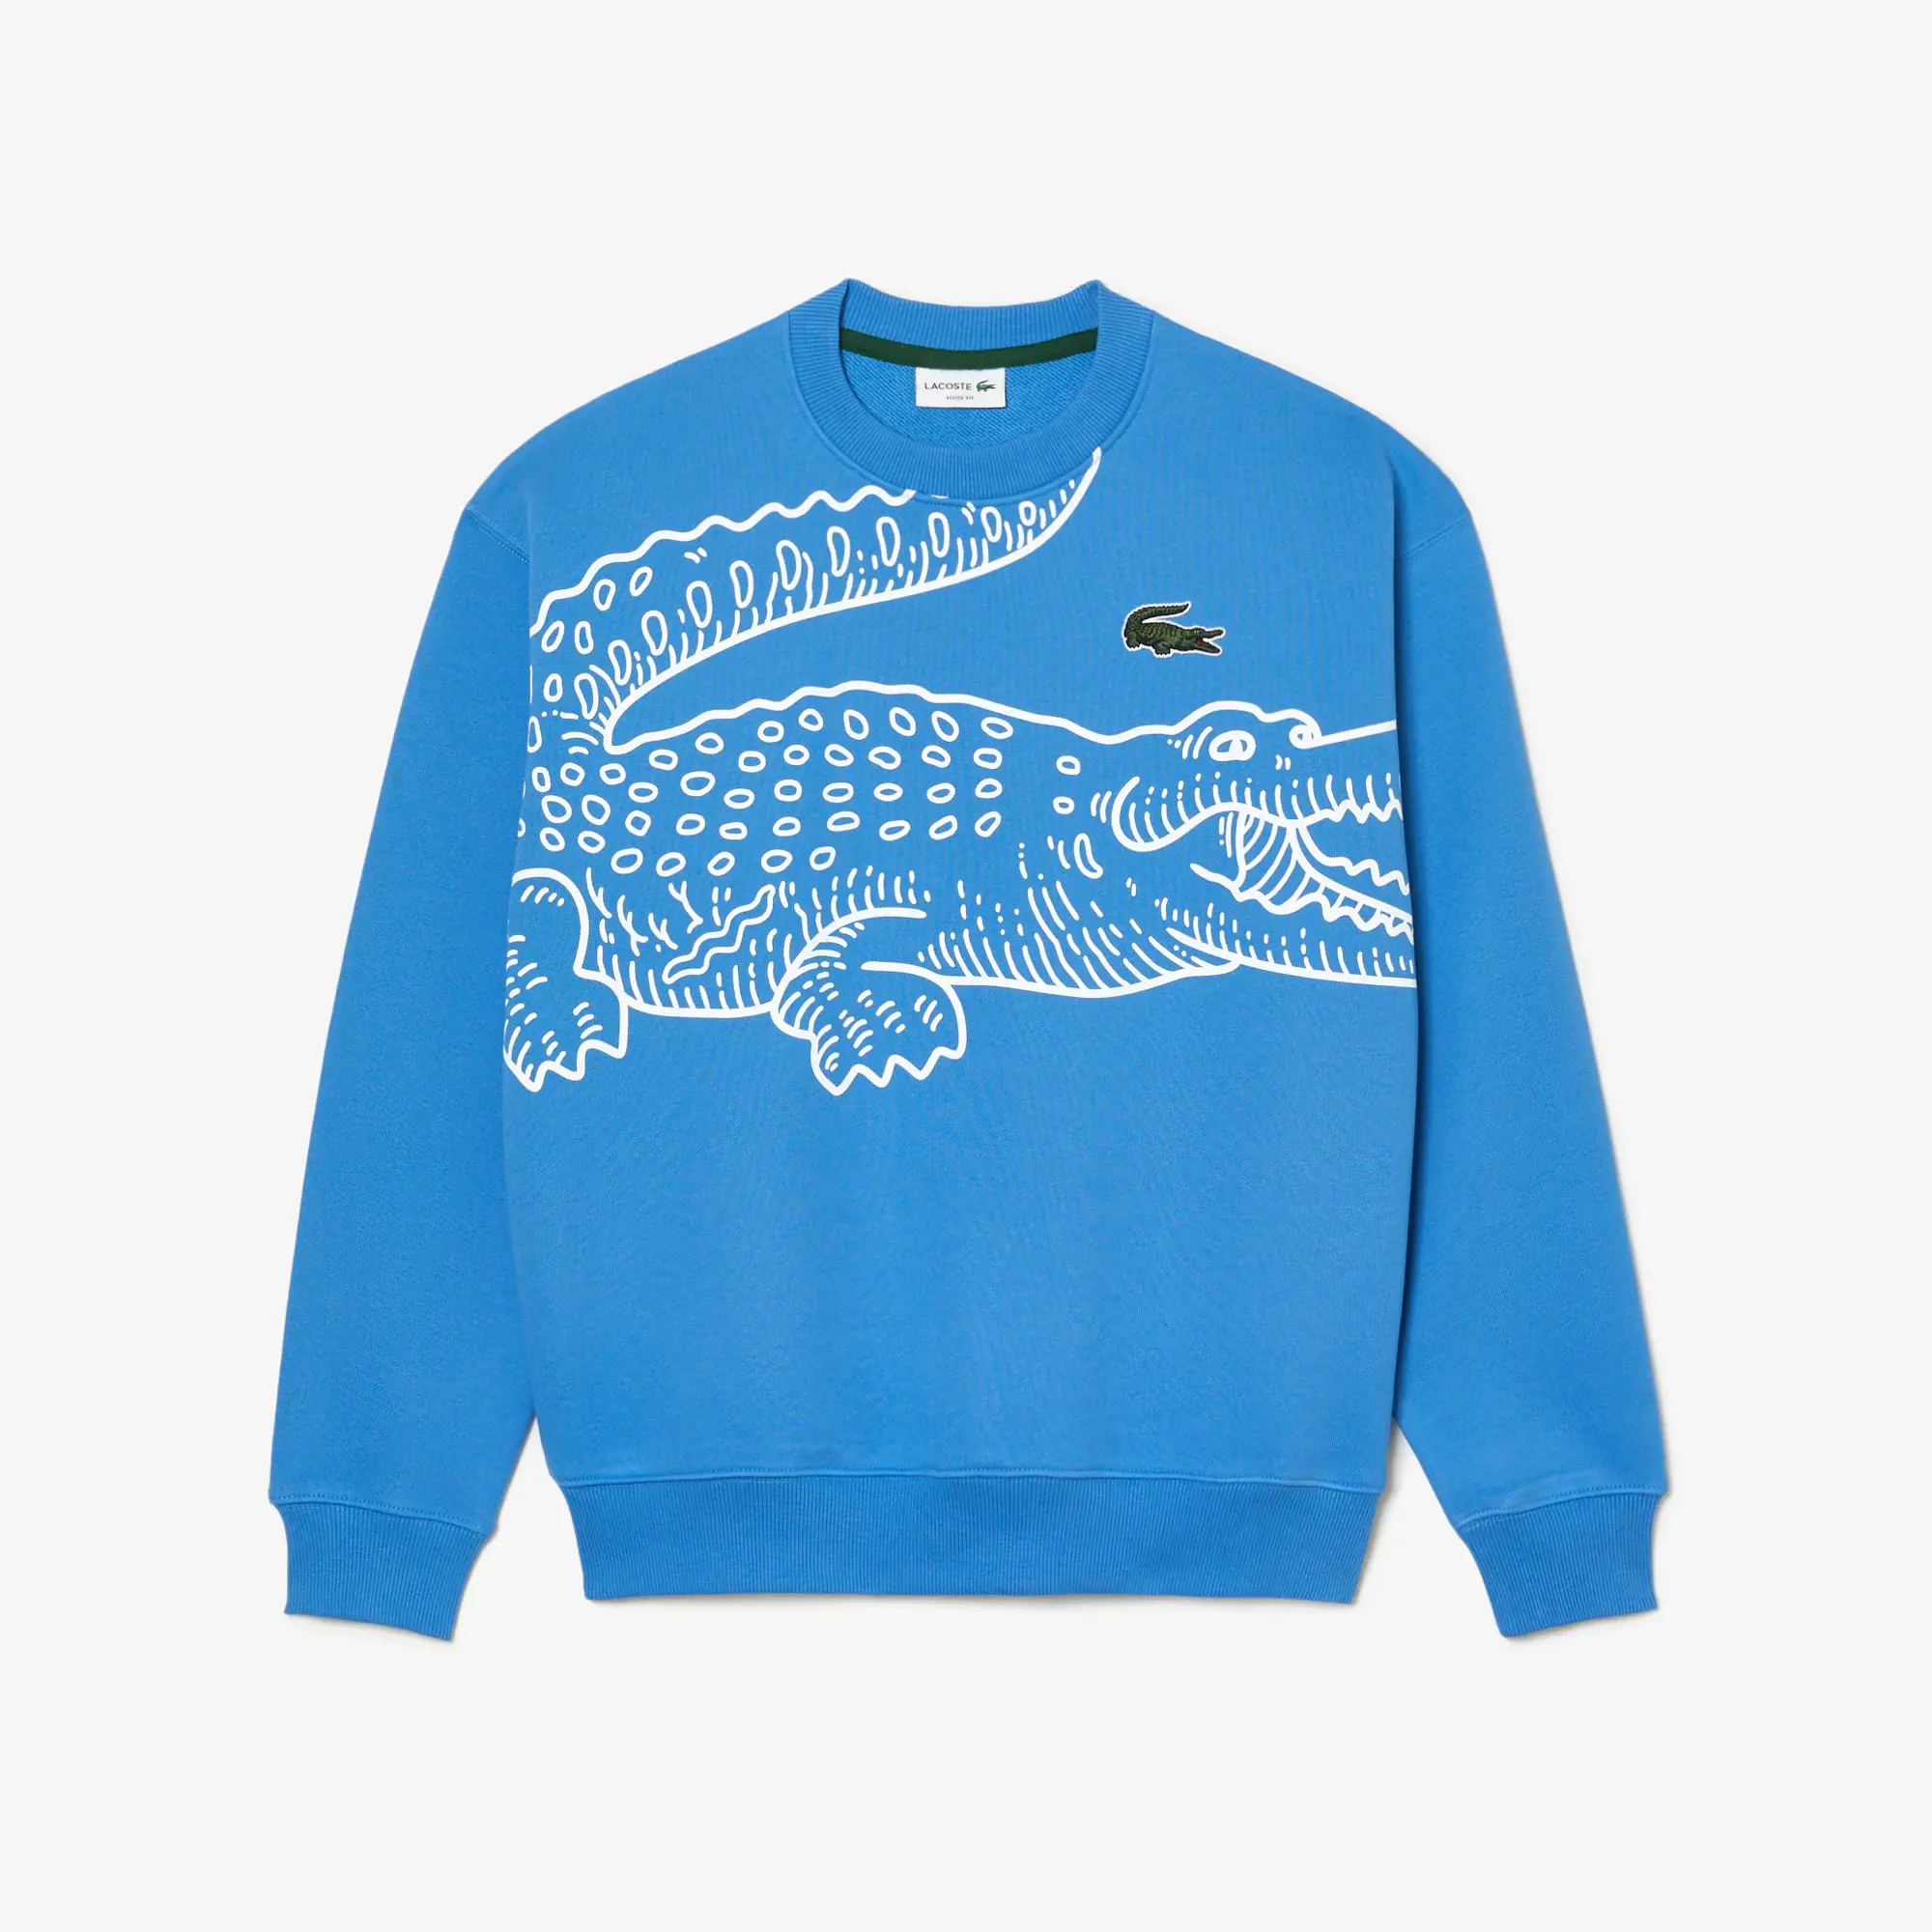 Lacoste Men’s Crew Neck Loose Fit Croc Print Sweatshirt. 2